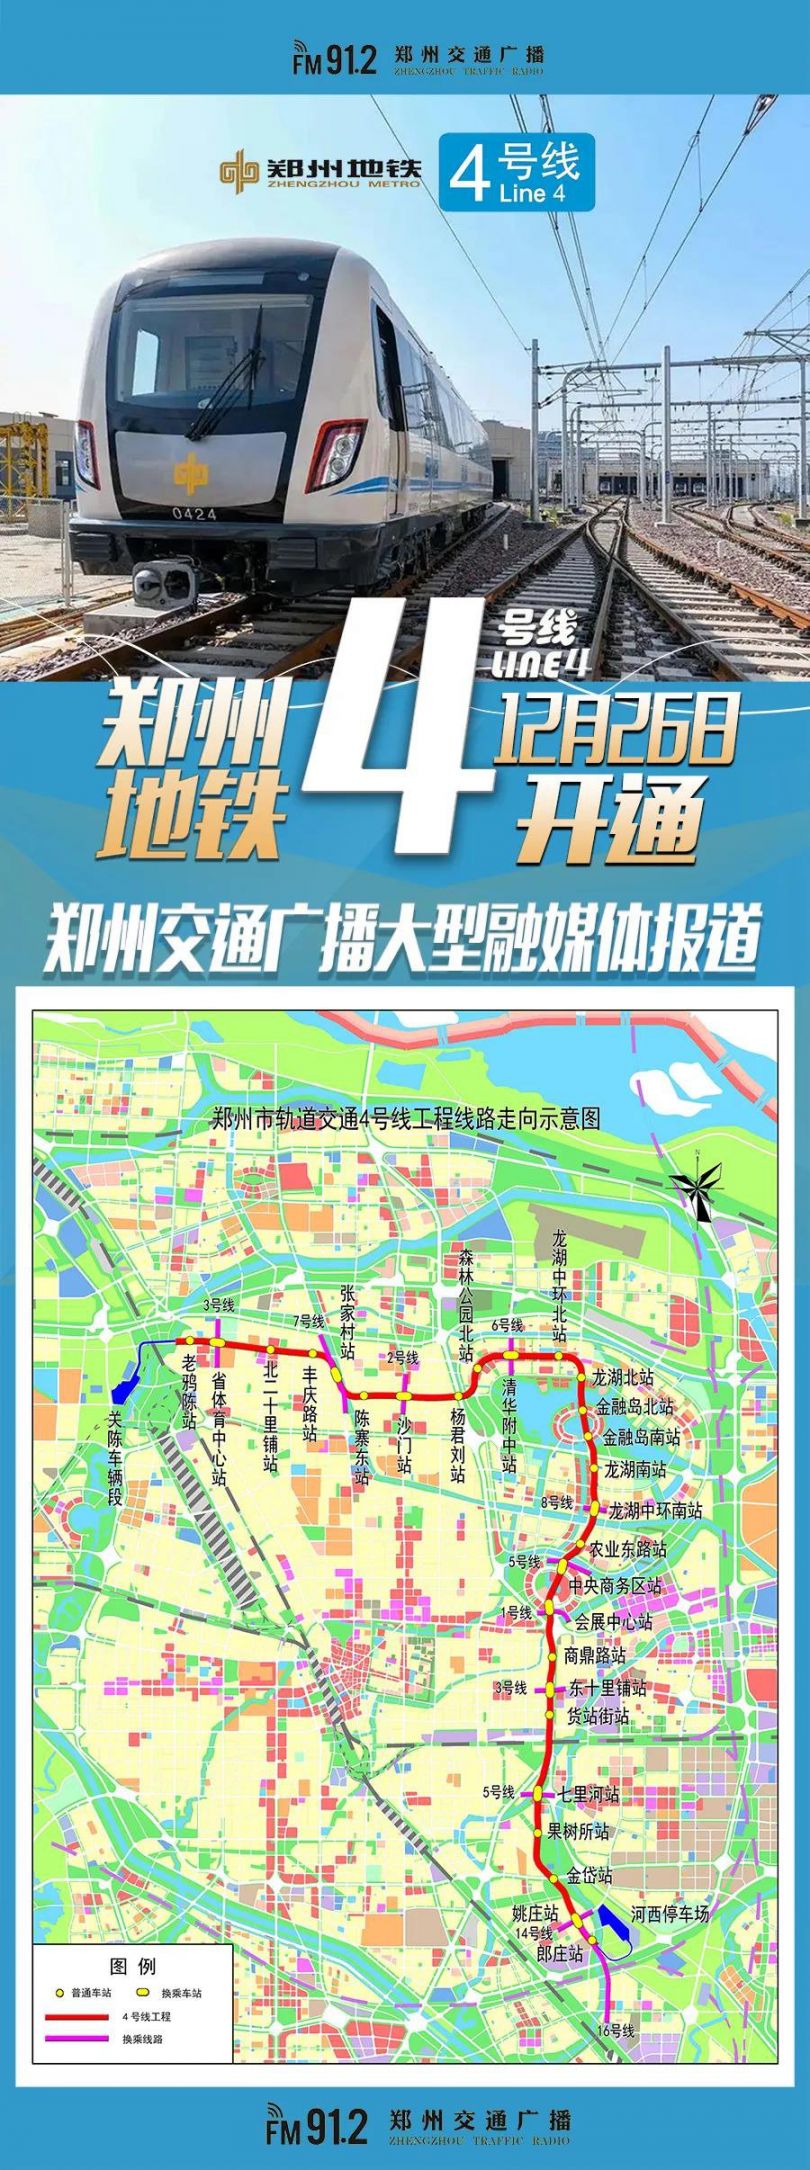 郑州地铁4号线26号开通吗?